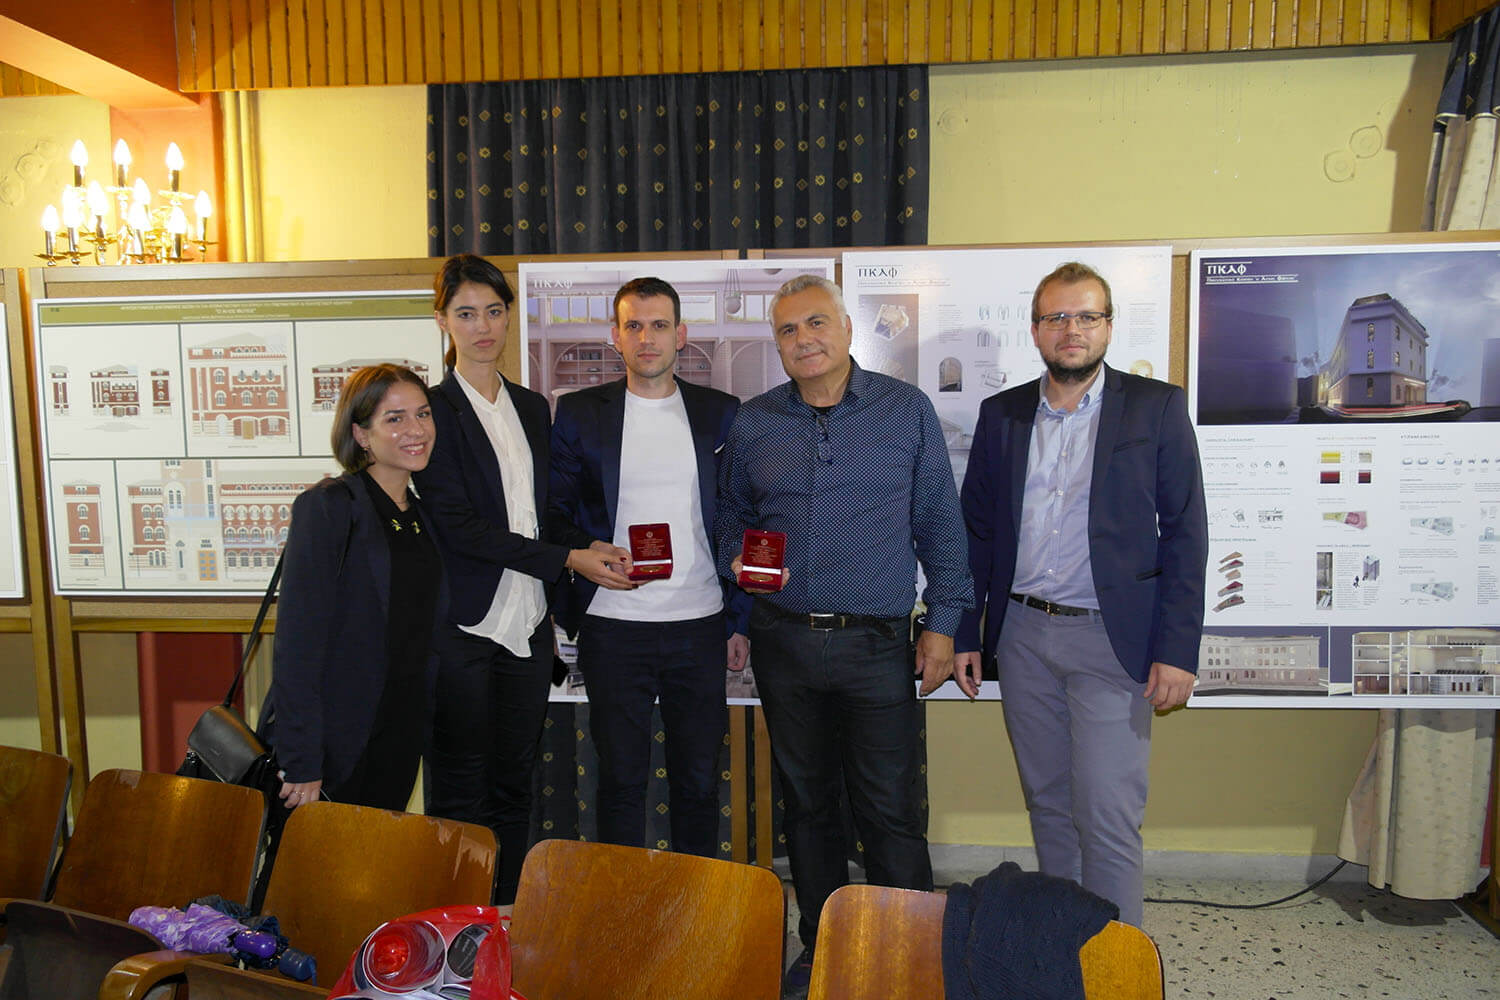 Αναμνηστική φωτογραφία του Χρήστου Αυγερινού και των συνεργατών του με το πρώτο βραβείο στην Κατερίνη.